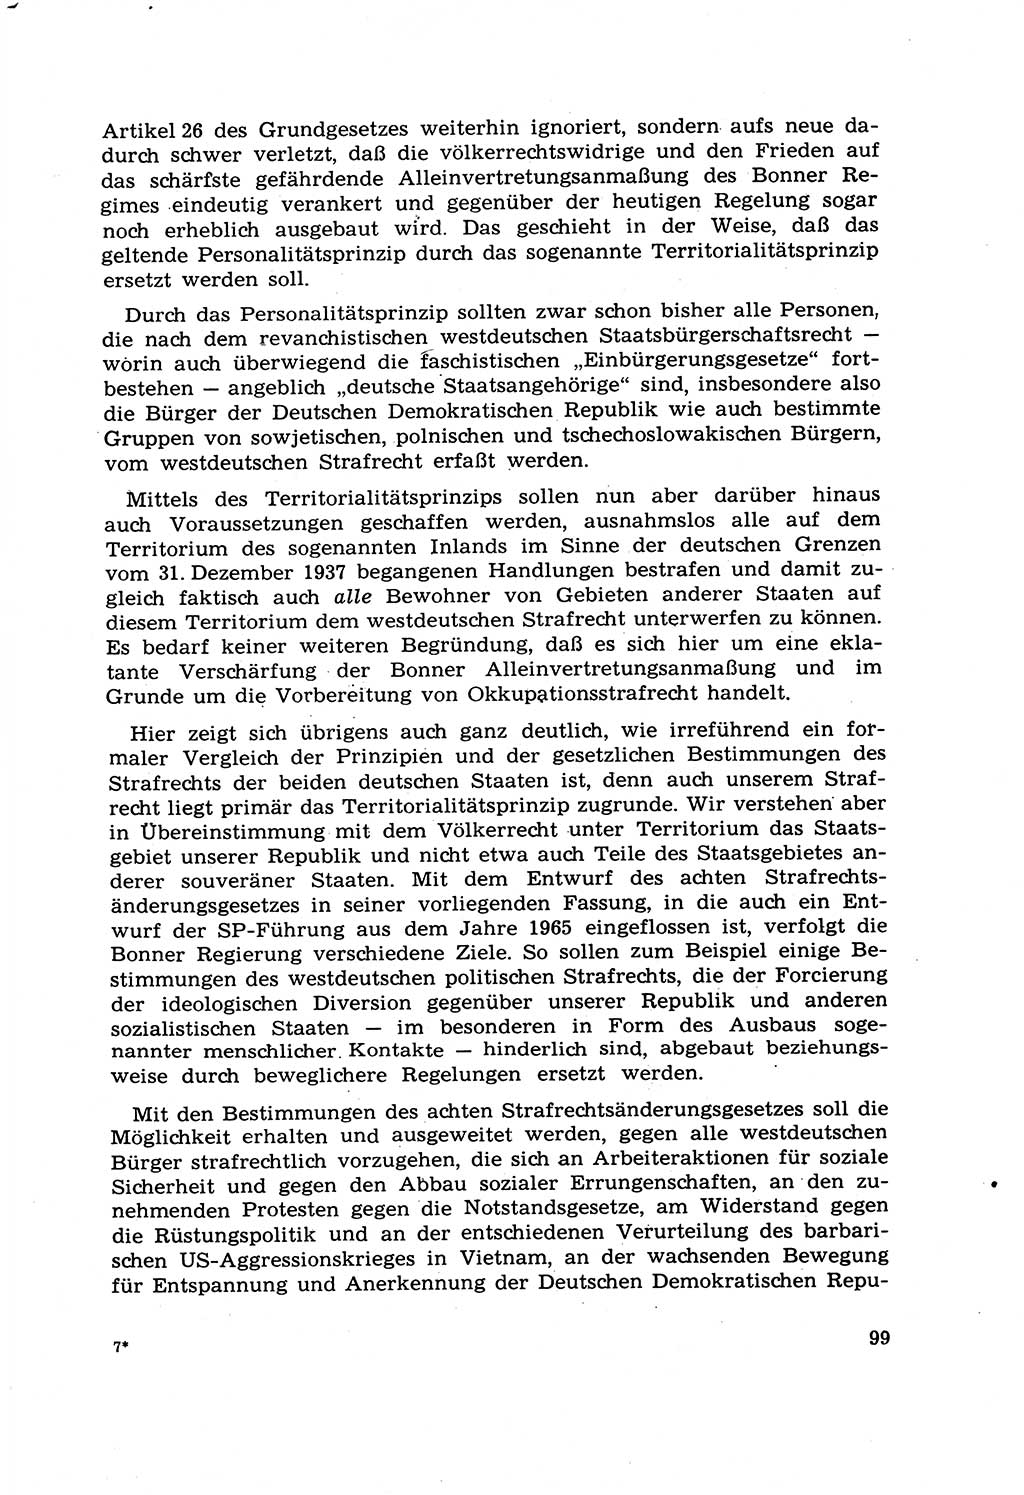 Strafrecht [Deutsche Demokratische Republik (DDR)] 1968, Seite 99 (Strafr. DDR 1968, S. 99)